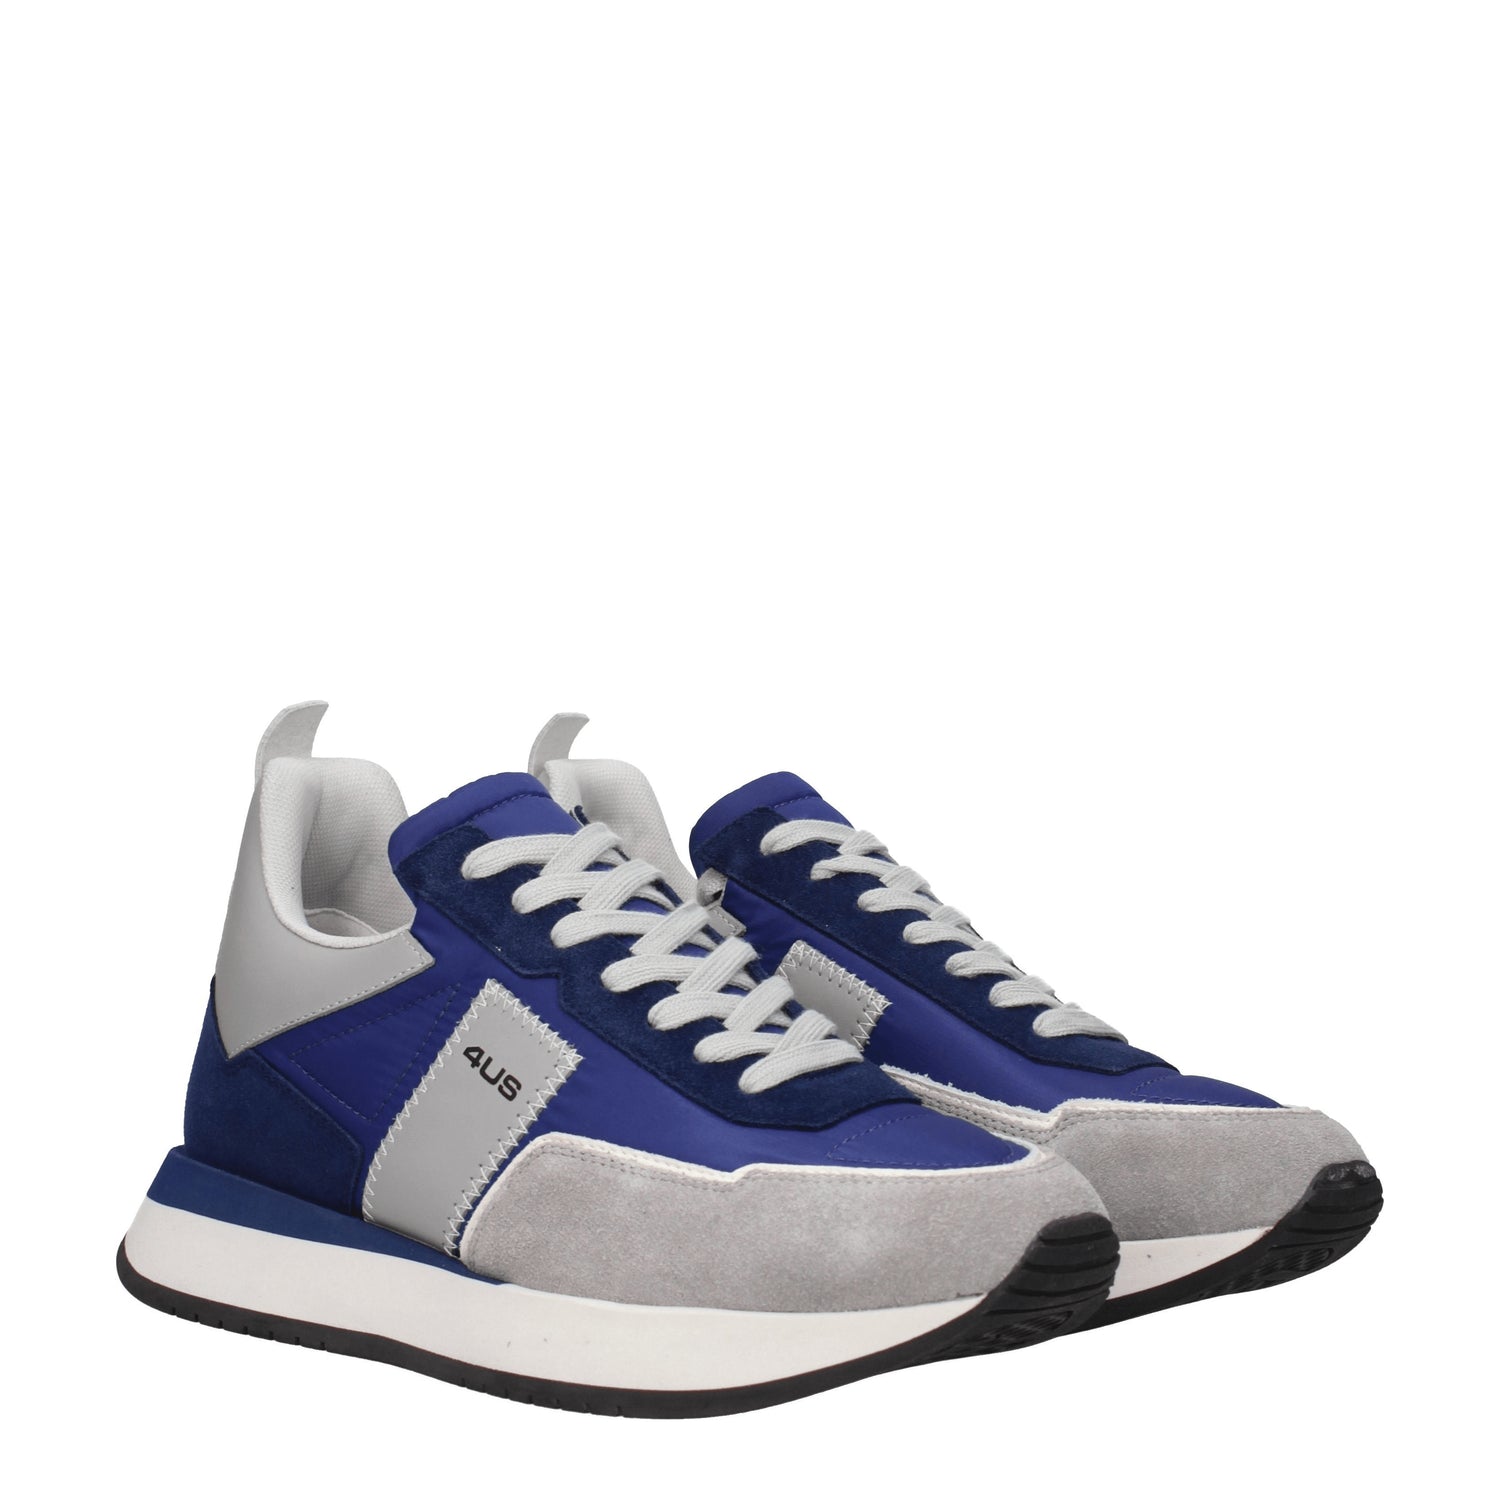 Cesare Paciotti Sneakers 4us Uomo Tessuto Blu Grigio